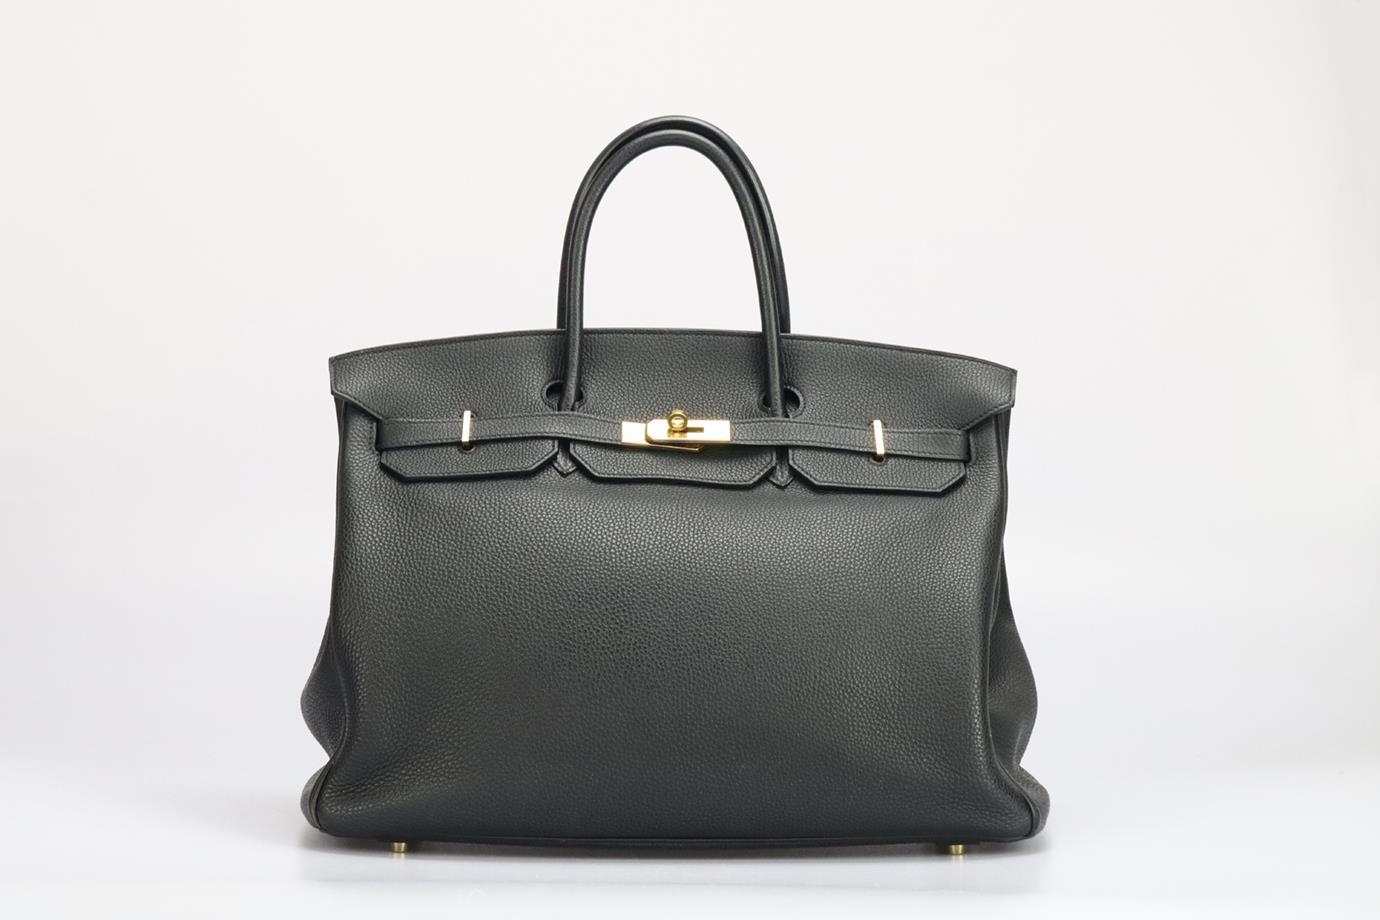 <ul>
<li>Hermès 2010 Birkin 40 Cm Clemence Leather Bag.</li>
<li>Black.</li>
<li>Twist lock fastening - Front.</li>
<li>Does not come with - dustbag or box.</li>
<li>Model: Birkin 40.</li>
<li>Made in France, this 2010 Hermès Birkin 40cm handbag has